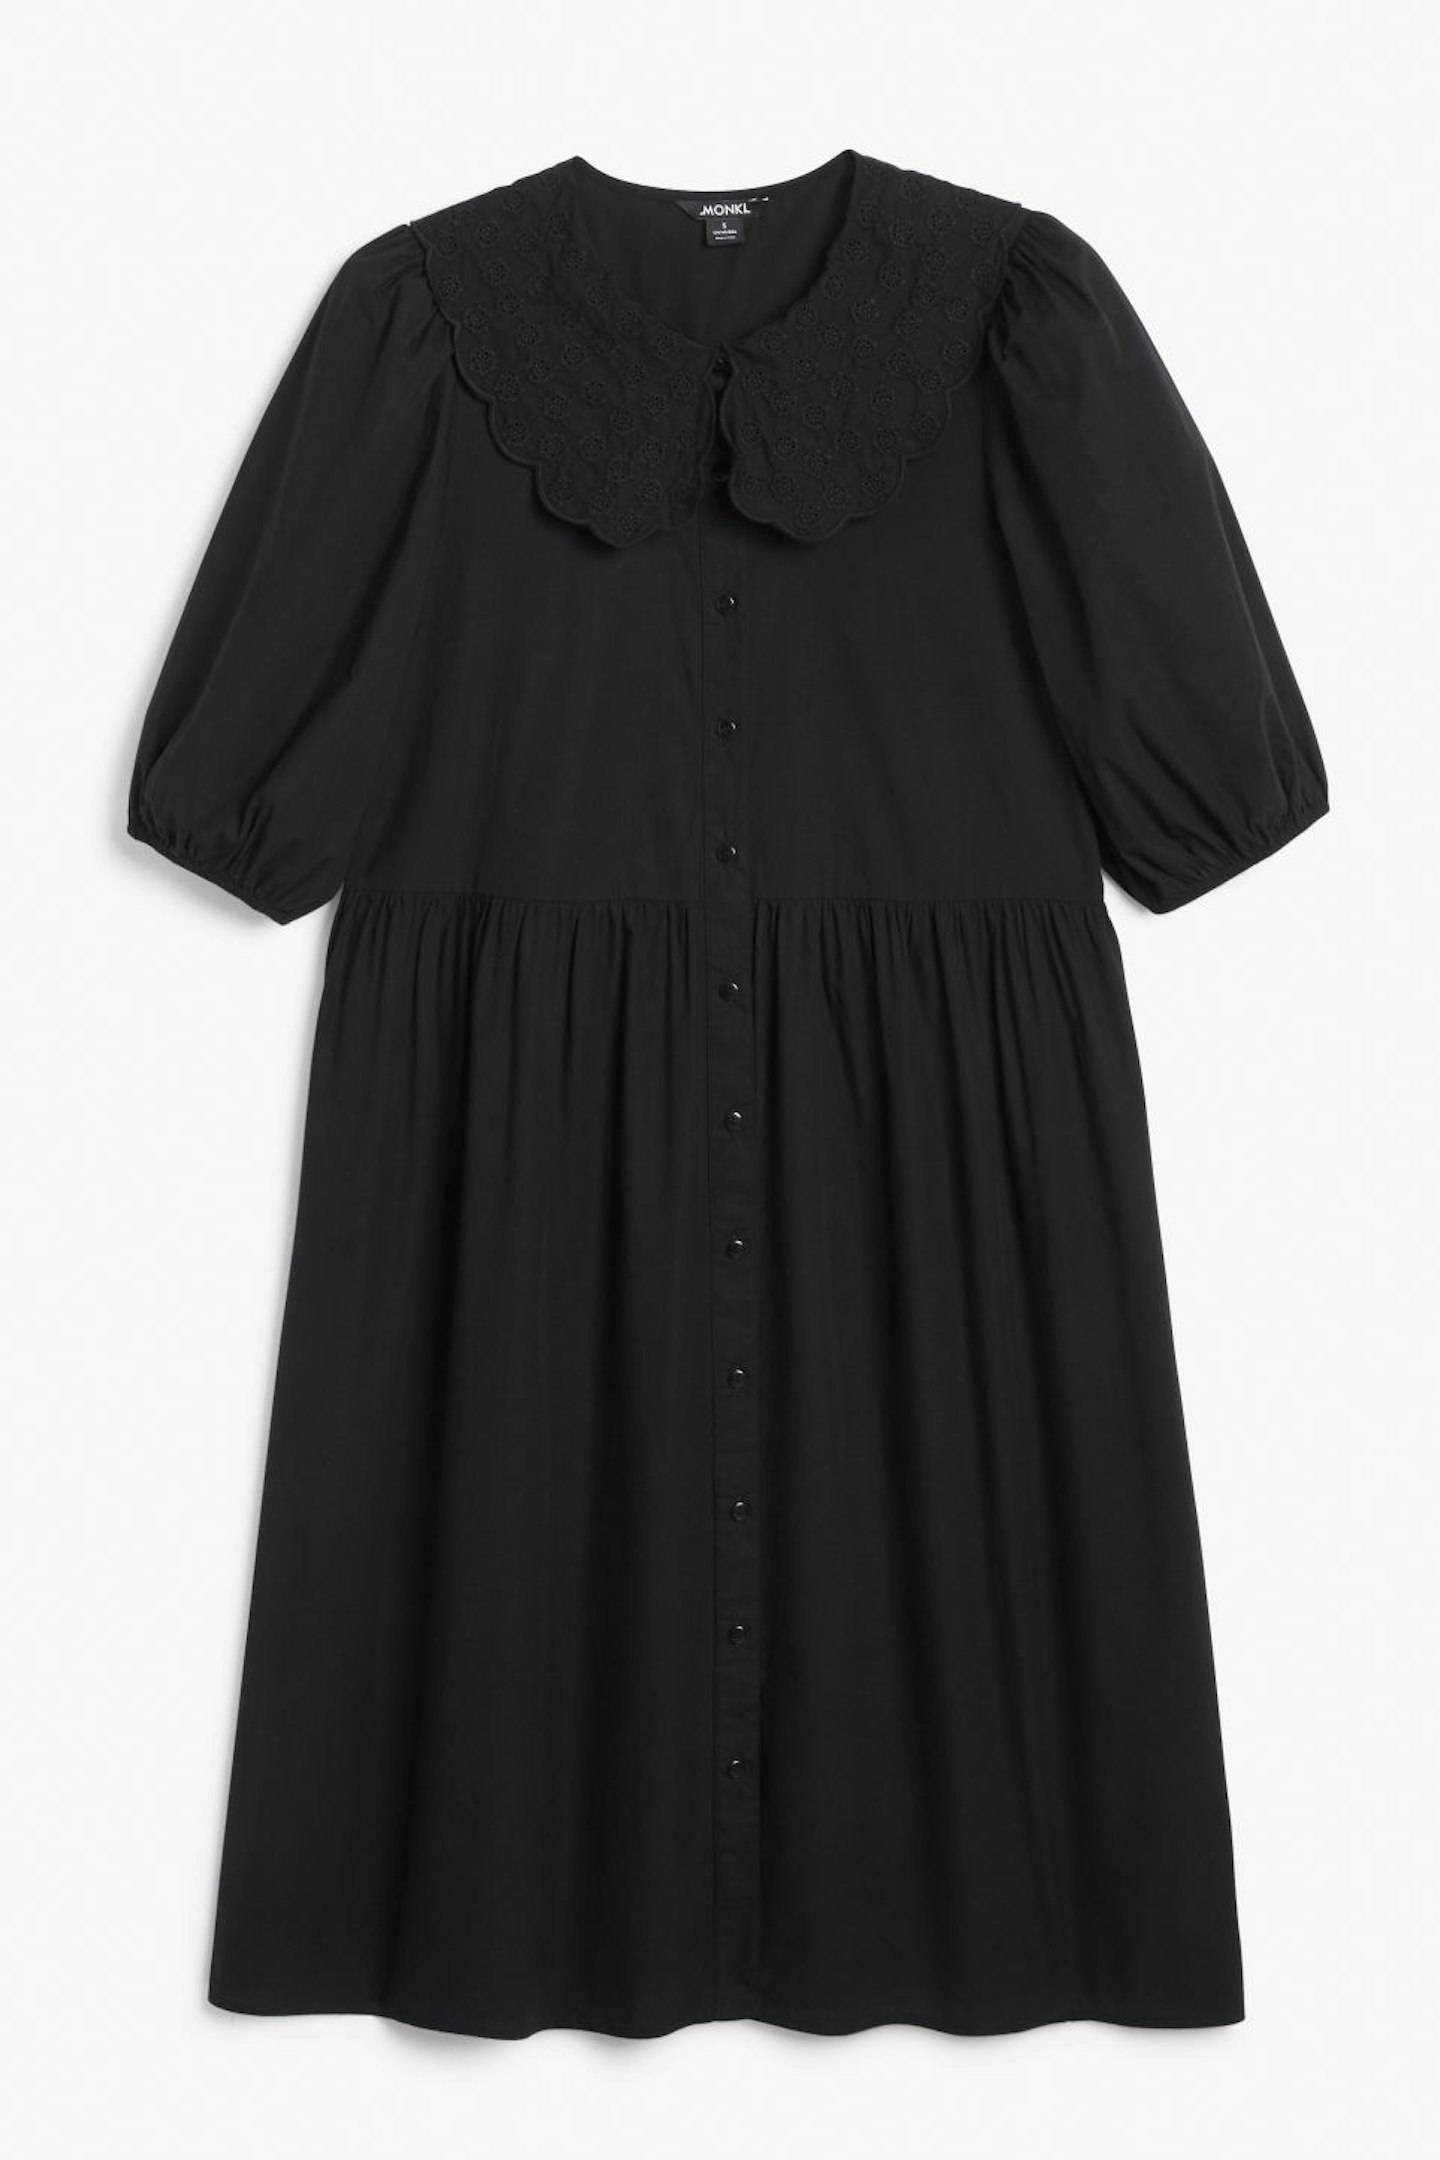 Monki, Statement Collar Cotton Dress, WAS £35 NOW £18